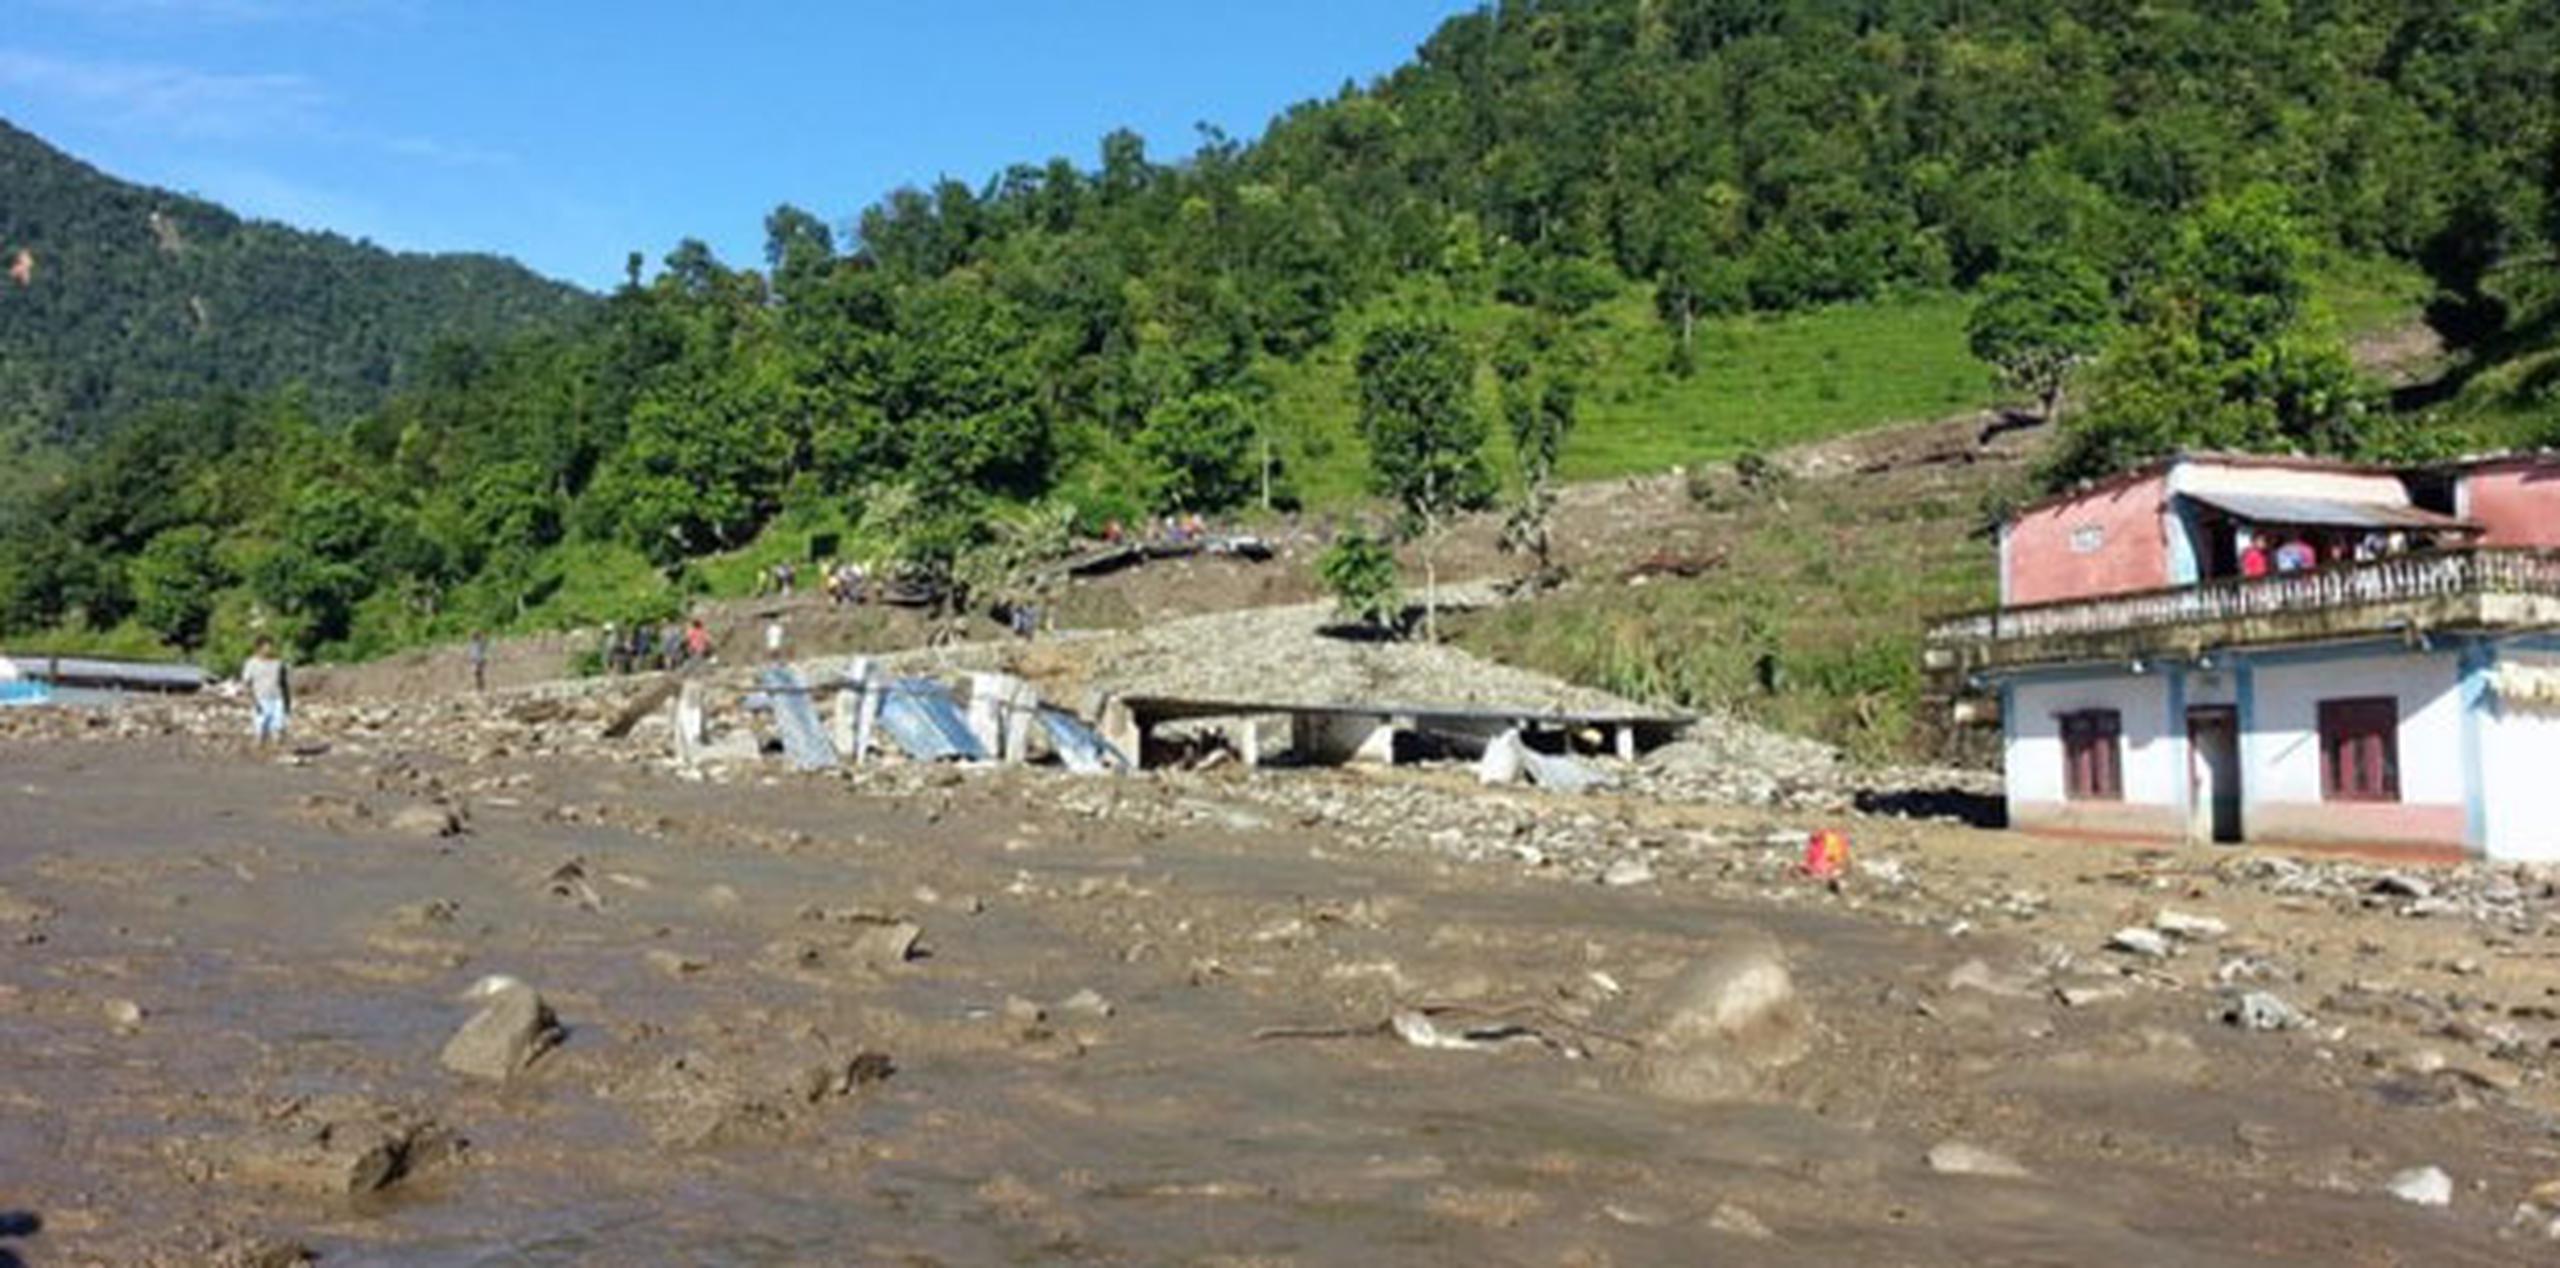 Las fuertes lluvias monzónicas en Nepal a menudo desencadenan deslizamientos de tierra en las montañas e inundaciones en las llanuras del sur. (AFP / SAGAR RAJ TIMILSINA)